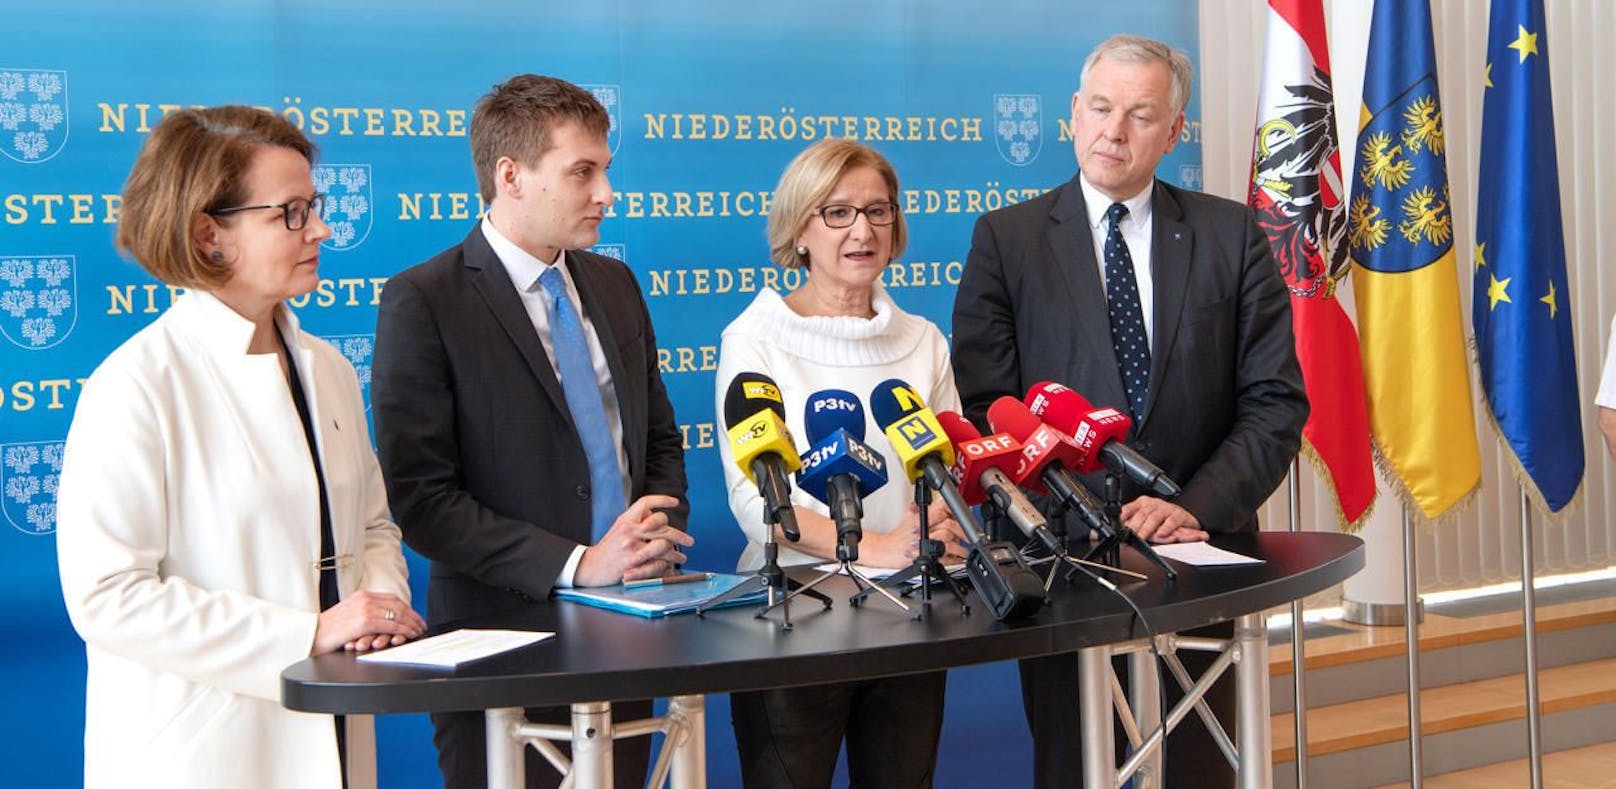 Landesrätin Christiane Teschl-Hofmeister, Hergovich, Mikl-Leitner und Eichtinger bei der Pressekonferenz.